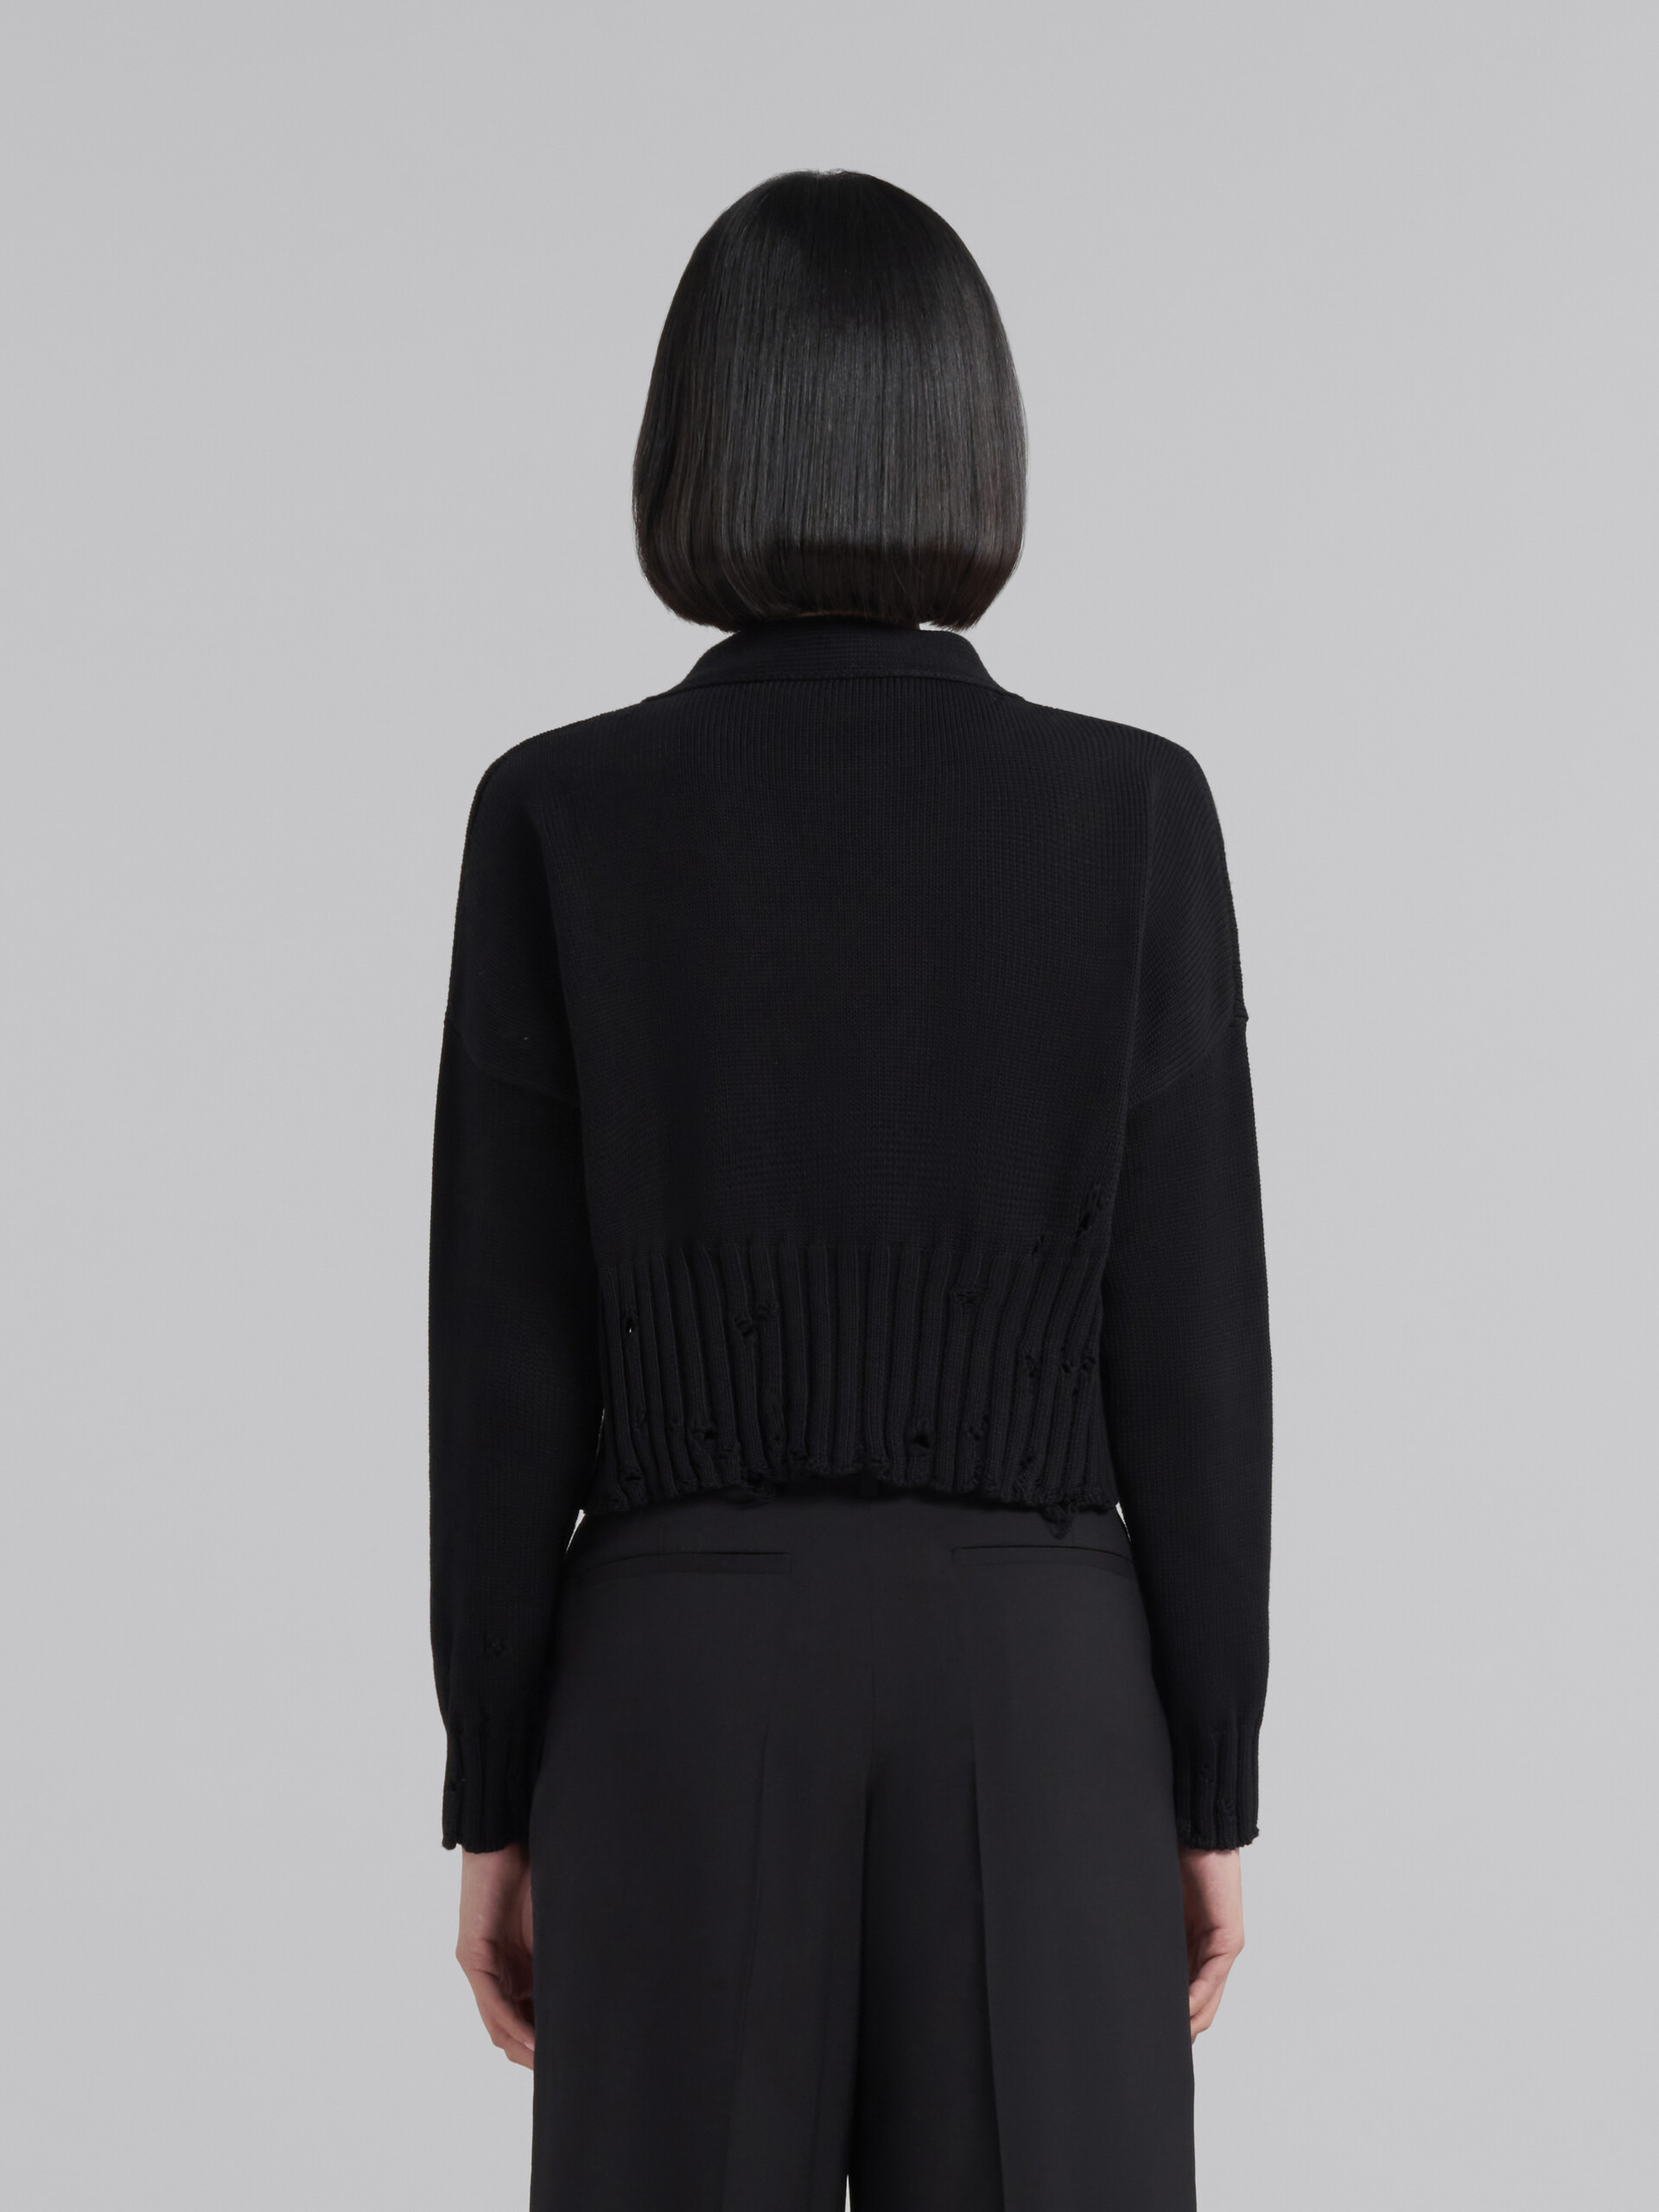 Cárdigan corto de algodón negro - jerseys - Image 3